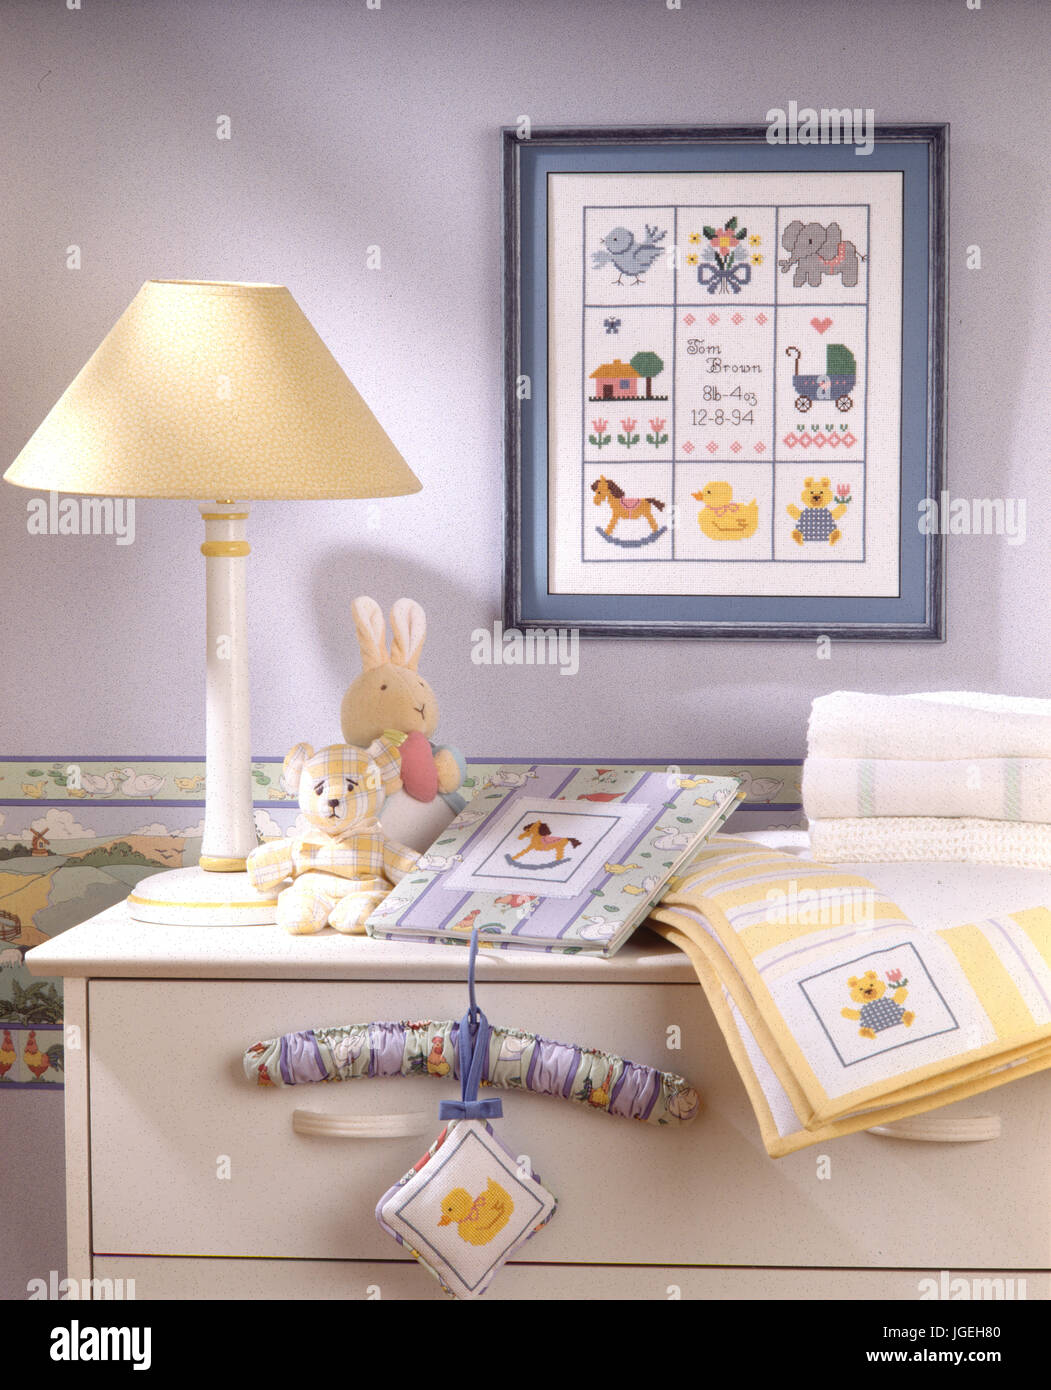 Raccolta di fatti in casa a punto croce elementi in un angolo della stanza per bambini Foto Stock